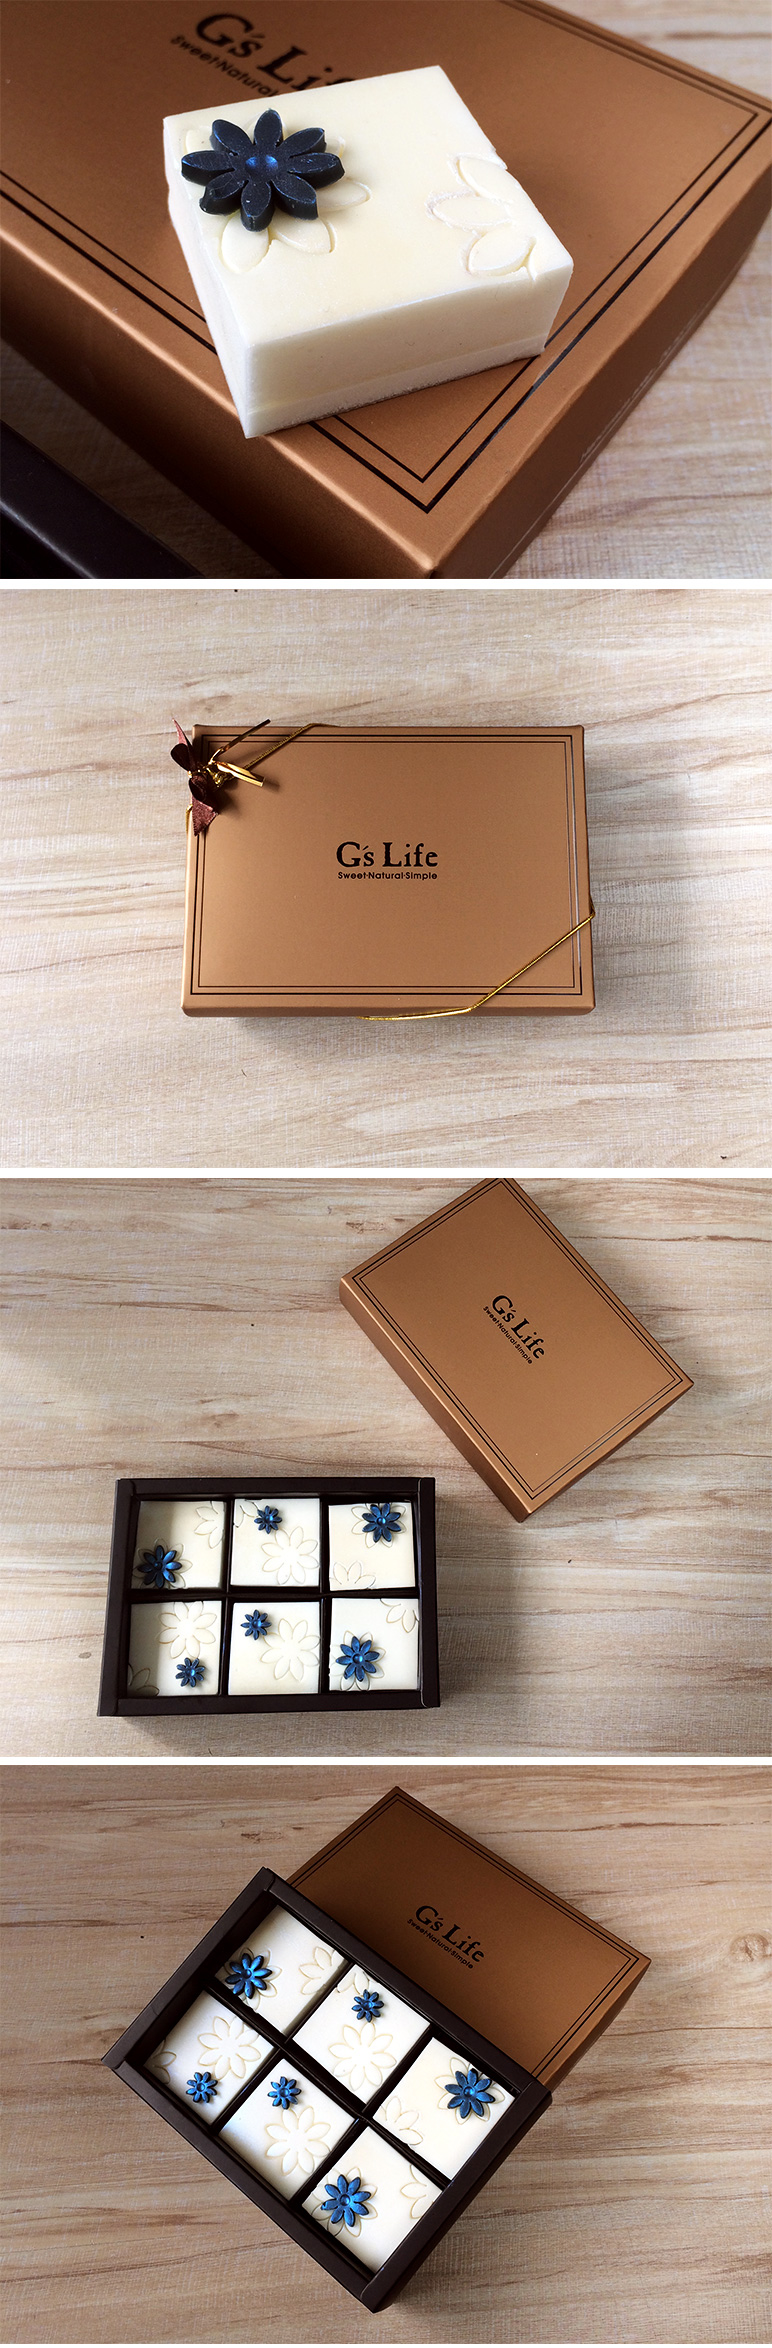 【4/9~5/12母親節現貨特惠】G’s Life 珍珠花兒‧六入方塊巧克力香皂禮盒